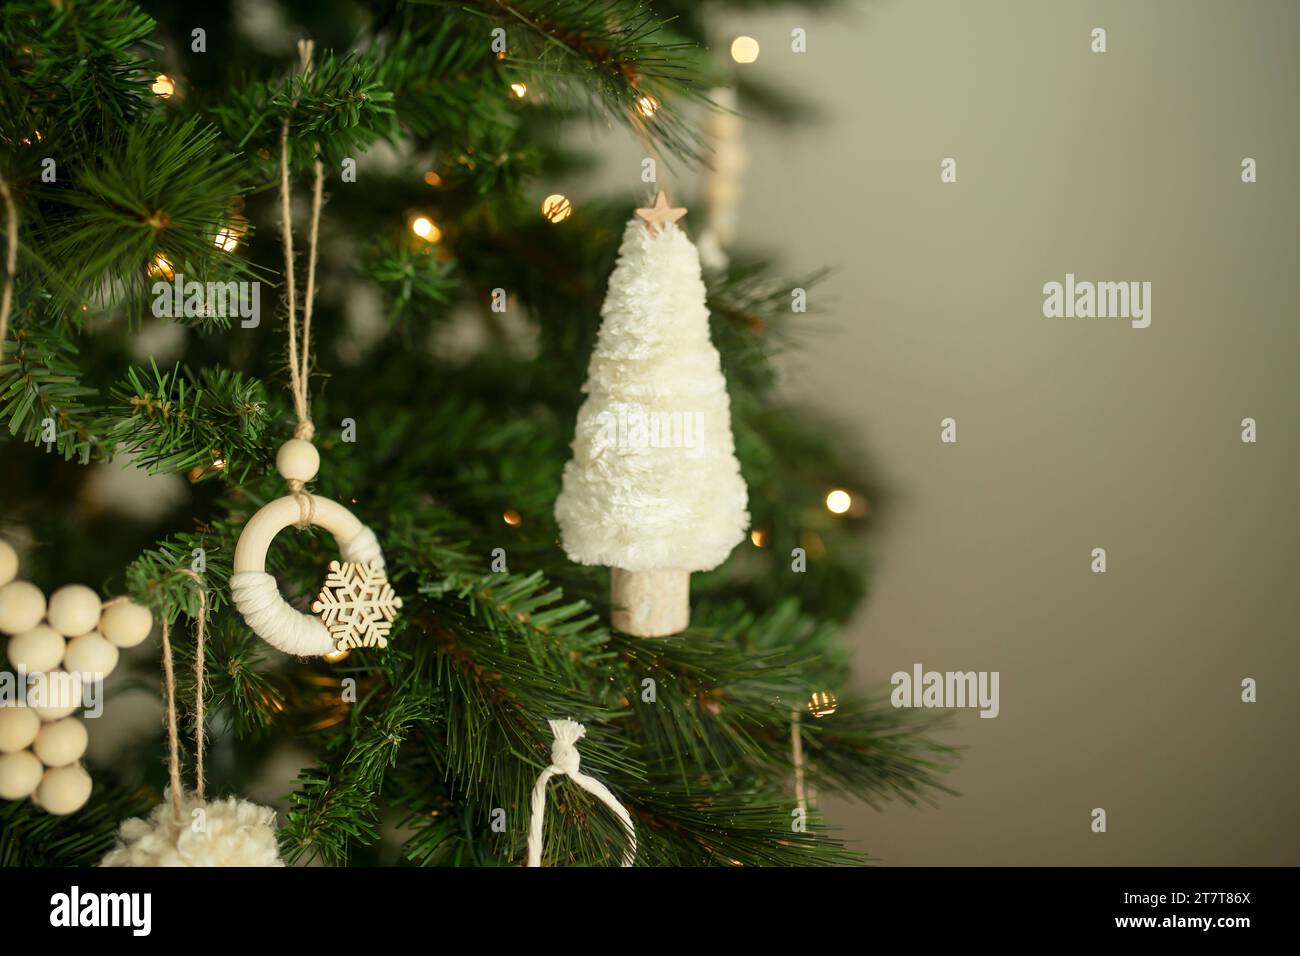 Ornements de noël blancs suspendus à un arbre avec des lumières blanches Banque D'Images